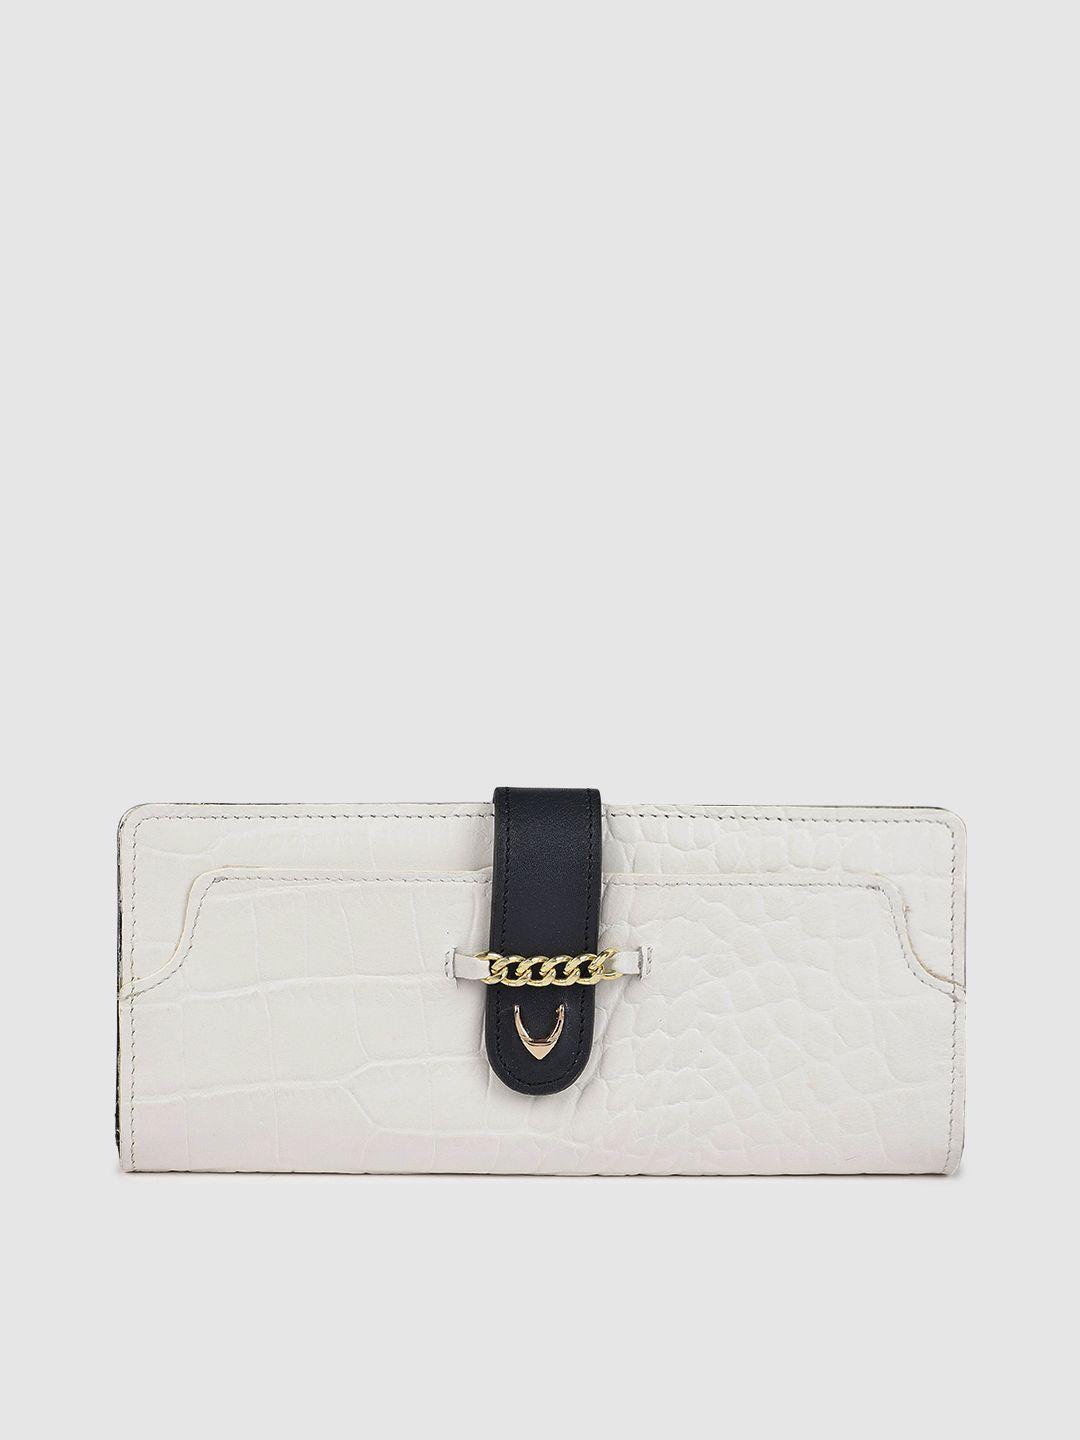 hidesign women white animal textured atria leather two fold wallet